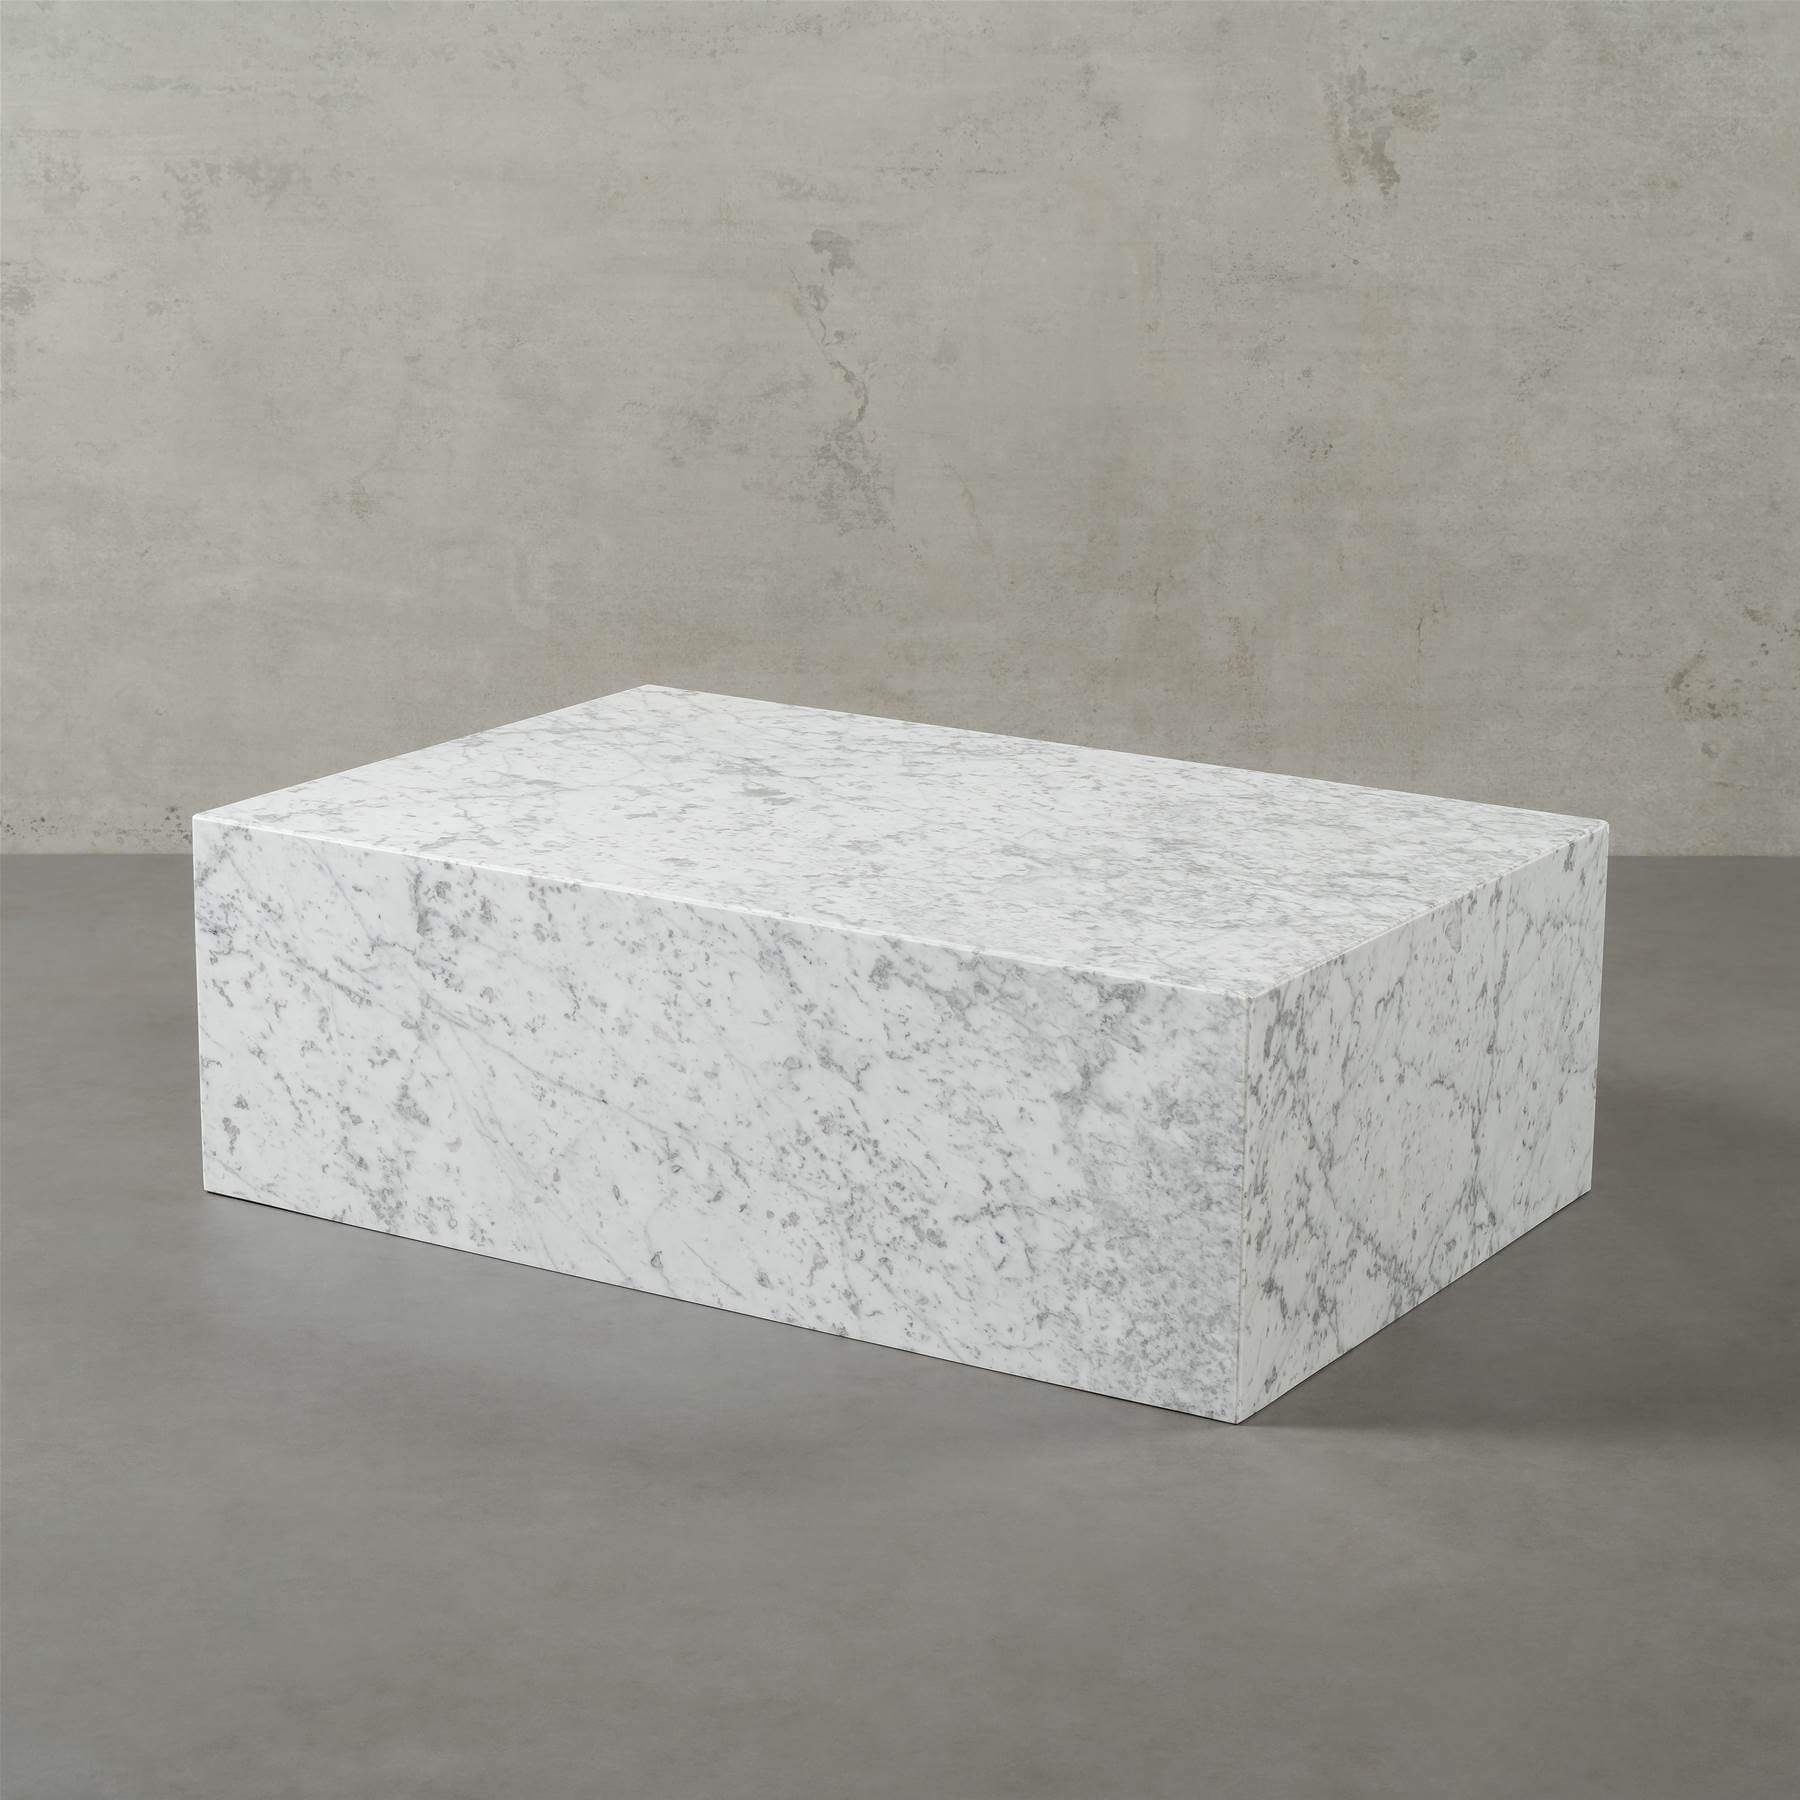 MAGNA Atelier Couchtisch ASPEN MARMOR, mit Naturstein, ECHTEM Bianco Tisch Wohnzimmer Carrara eckig, 90x60x30cm